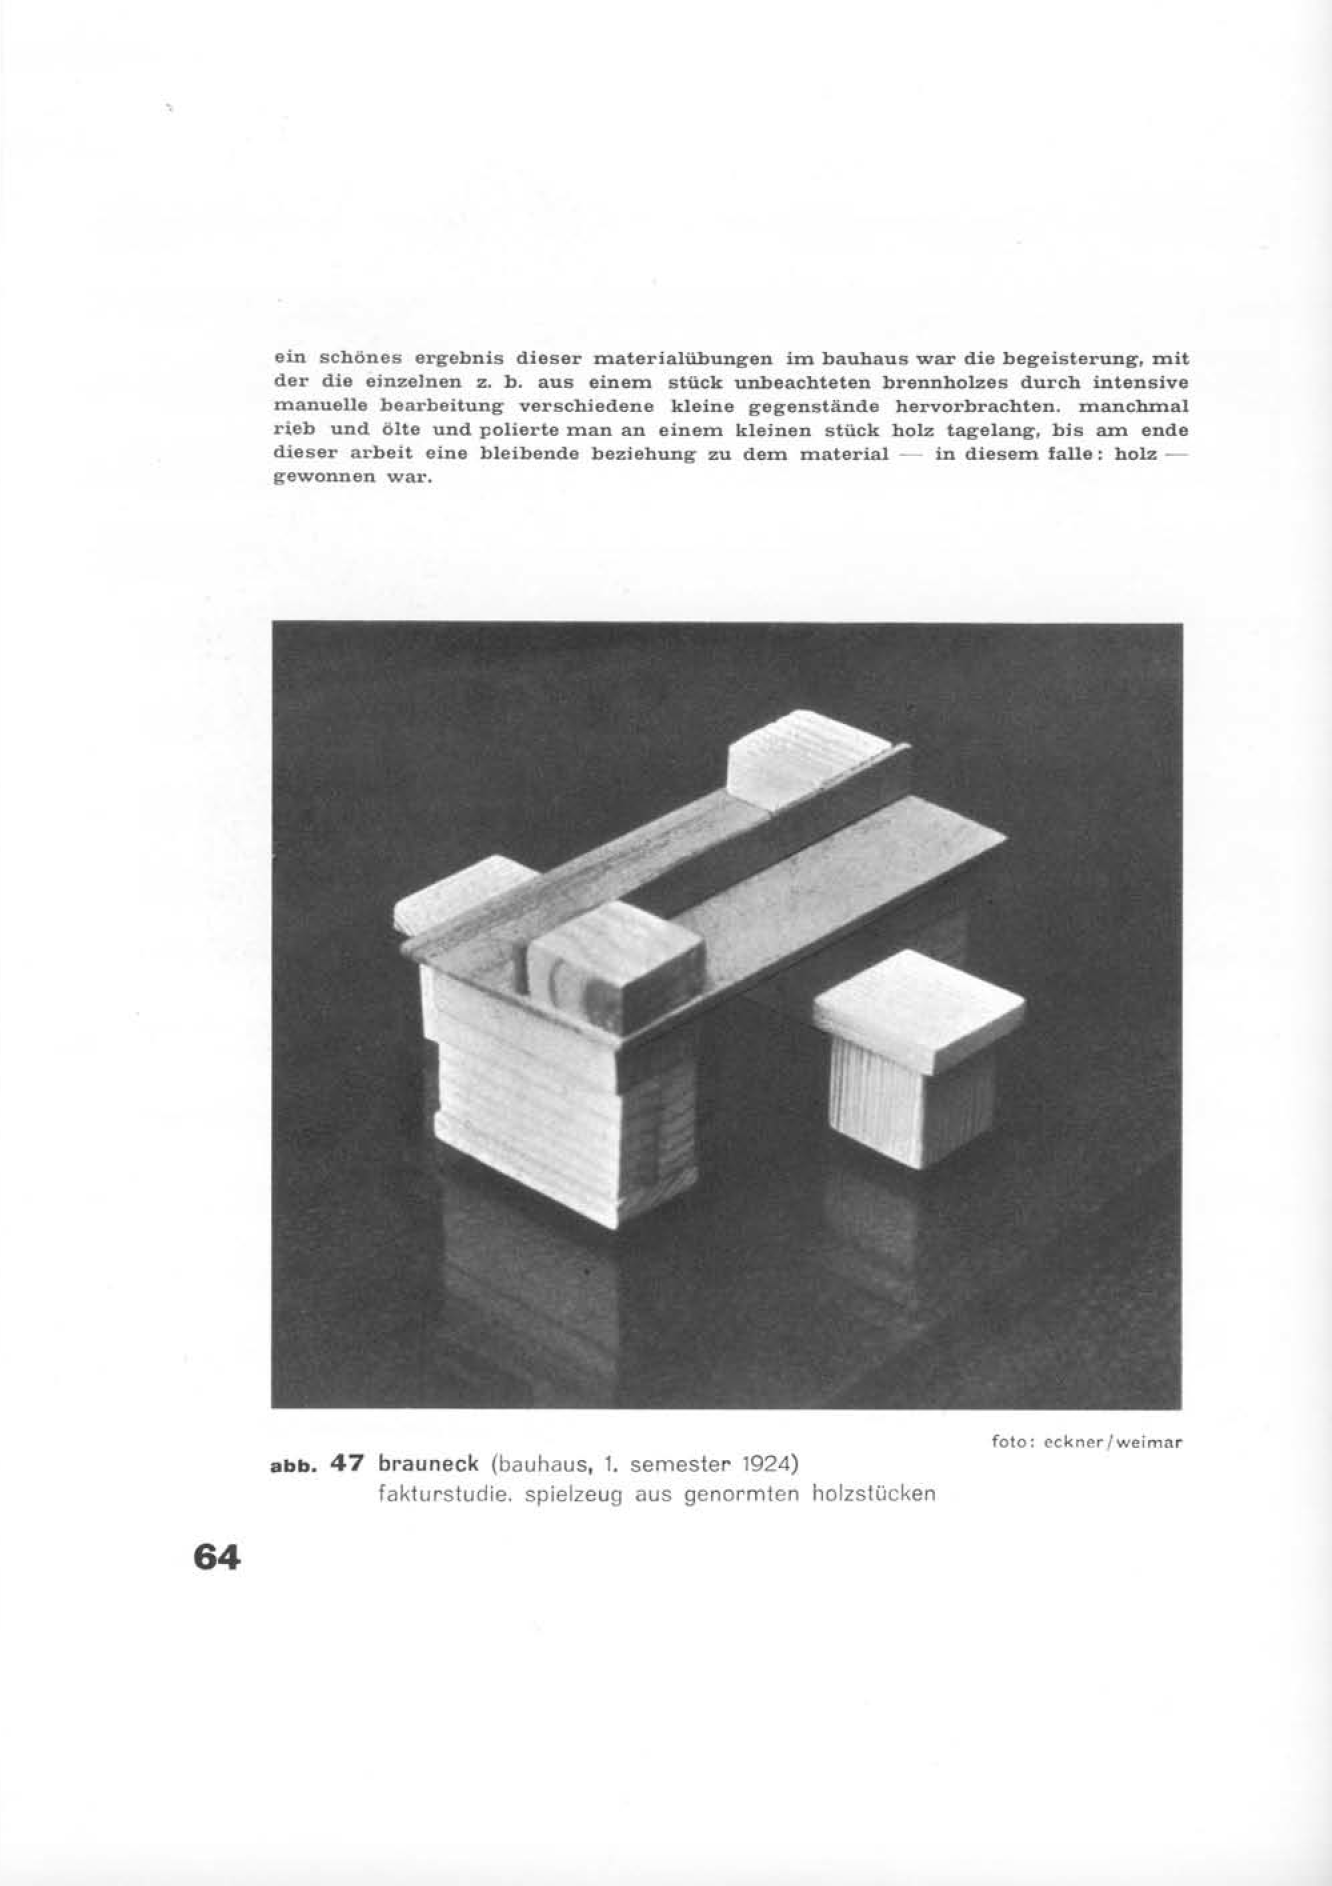 Brauneck, Fakturstudien, Abb. Baushausbuch 14